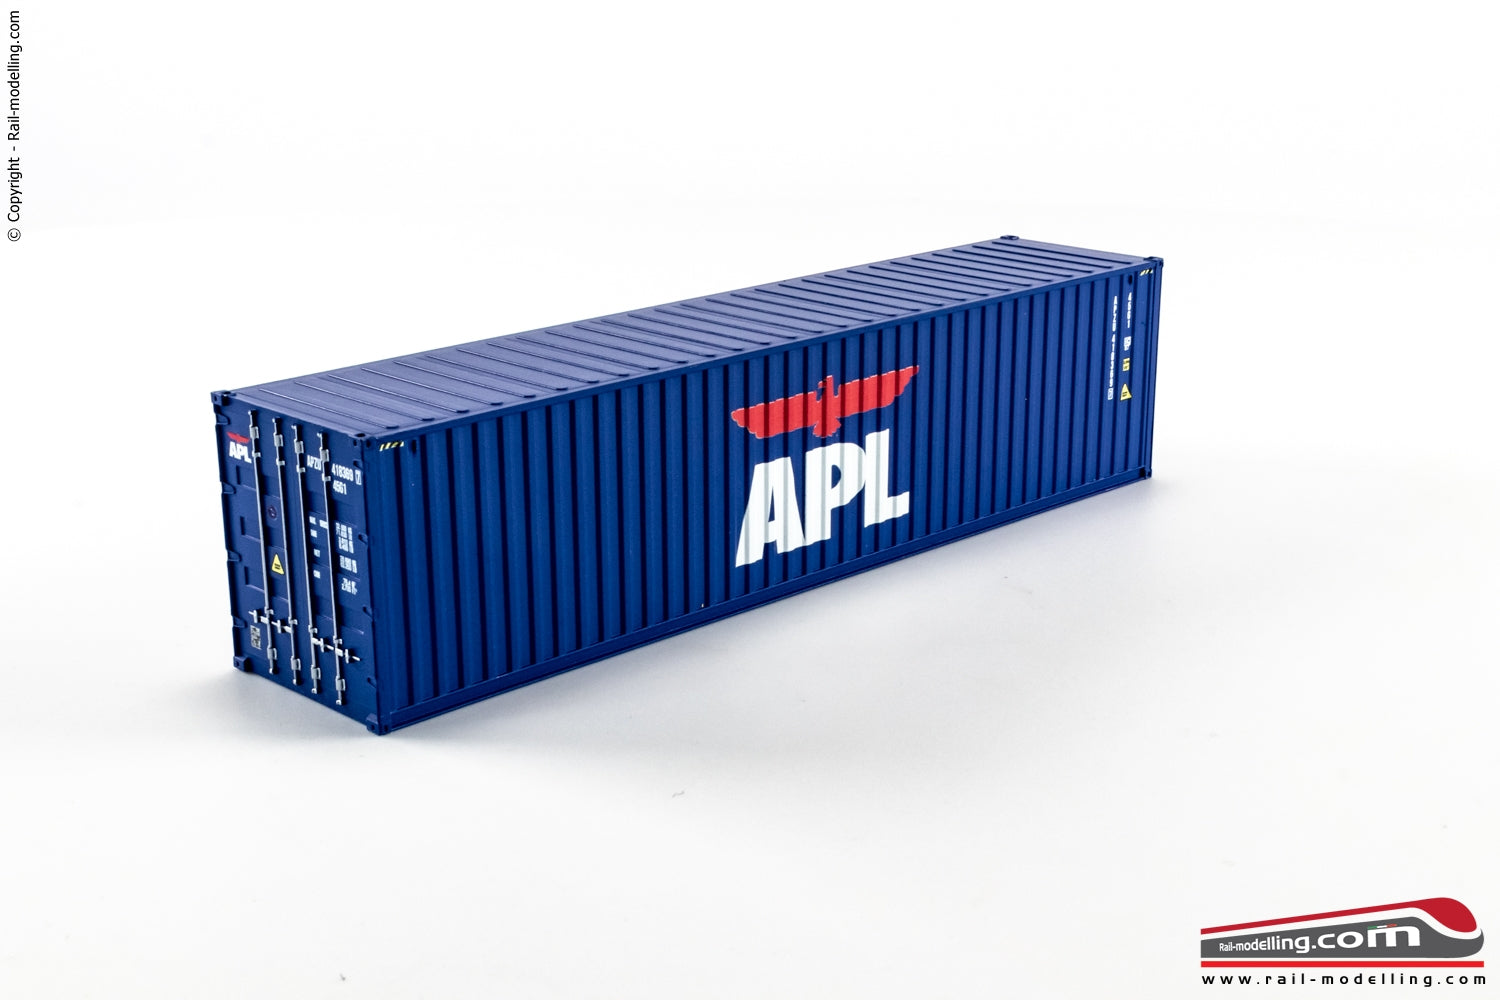 RAIL-MOD C10 - H0 187 - Container 40 APL Blu